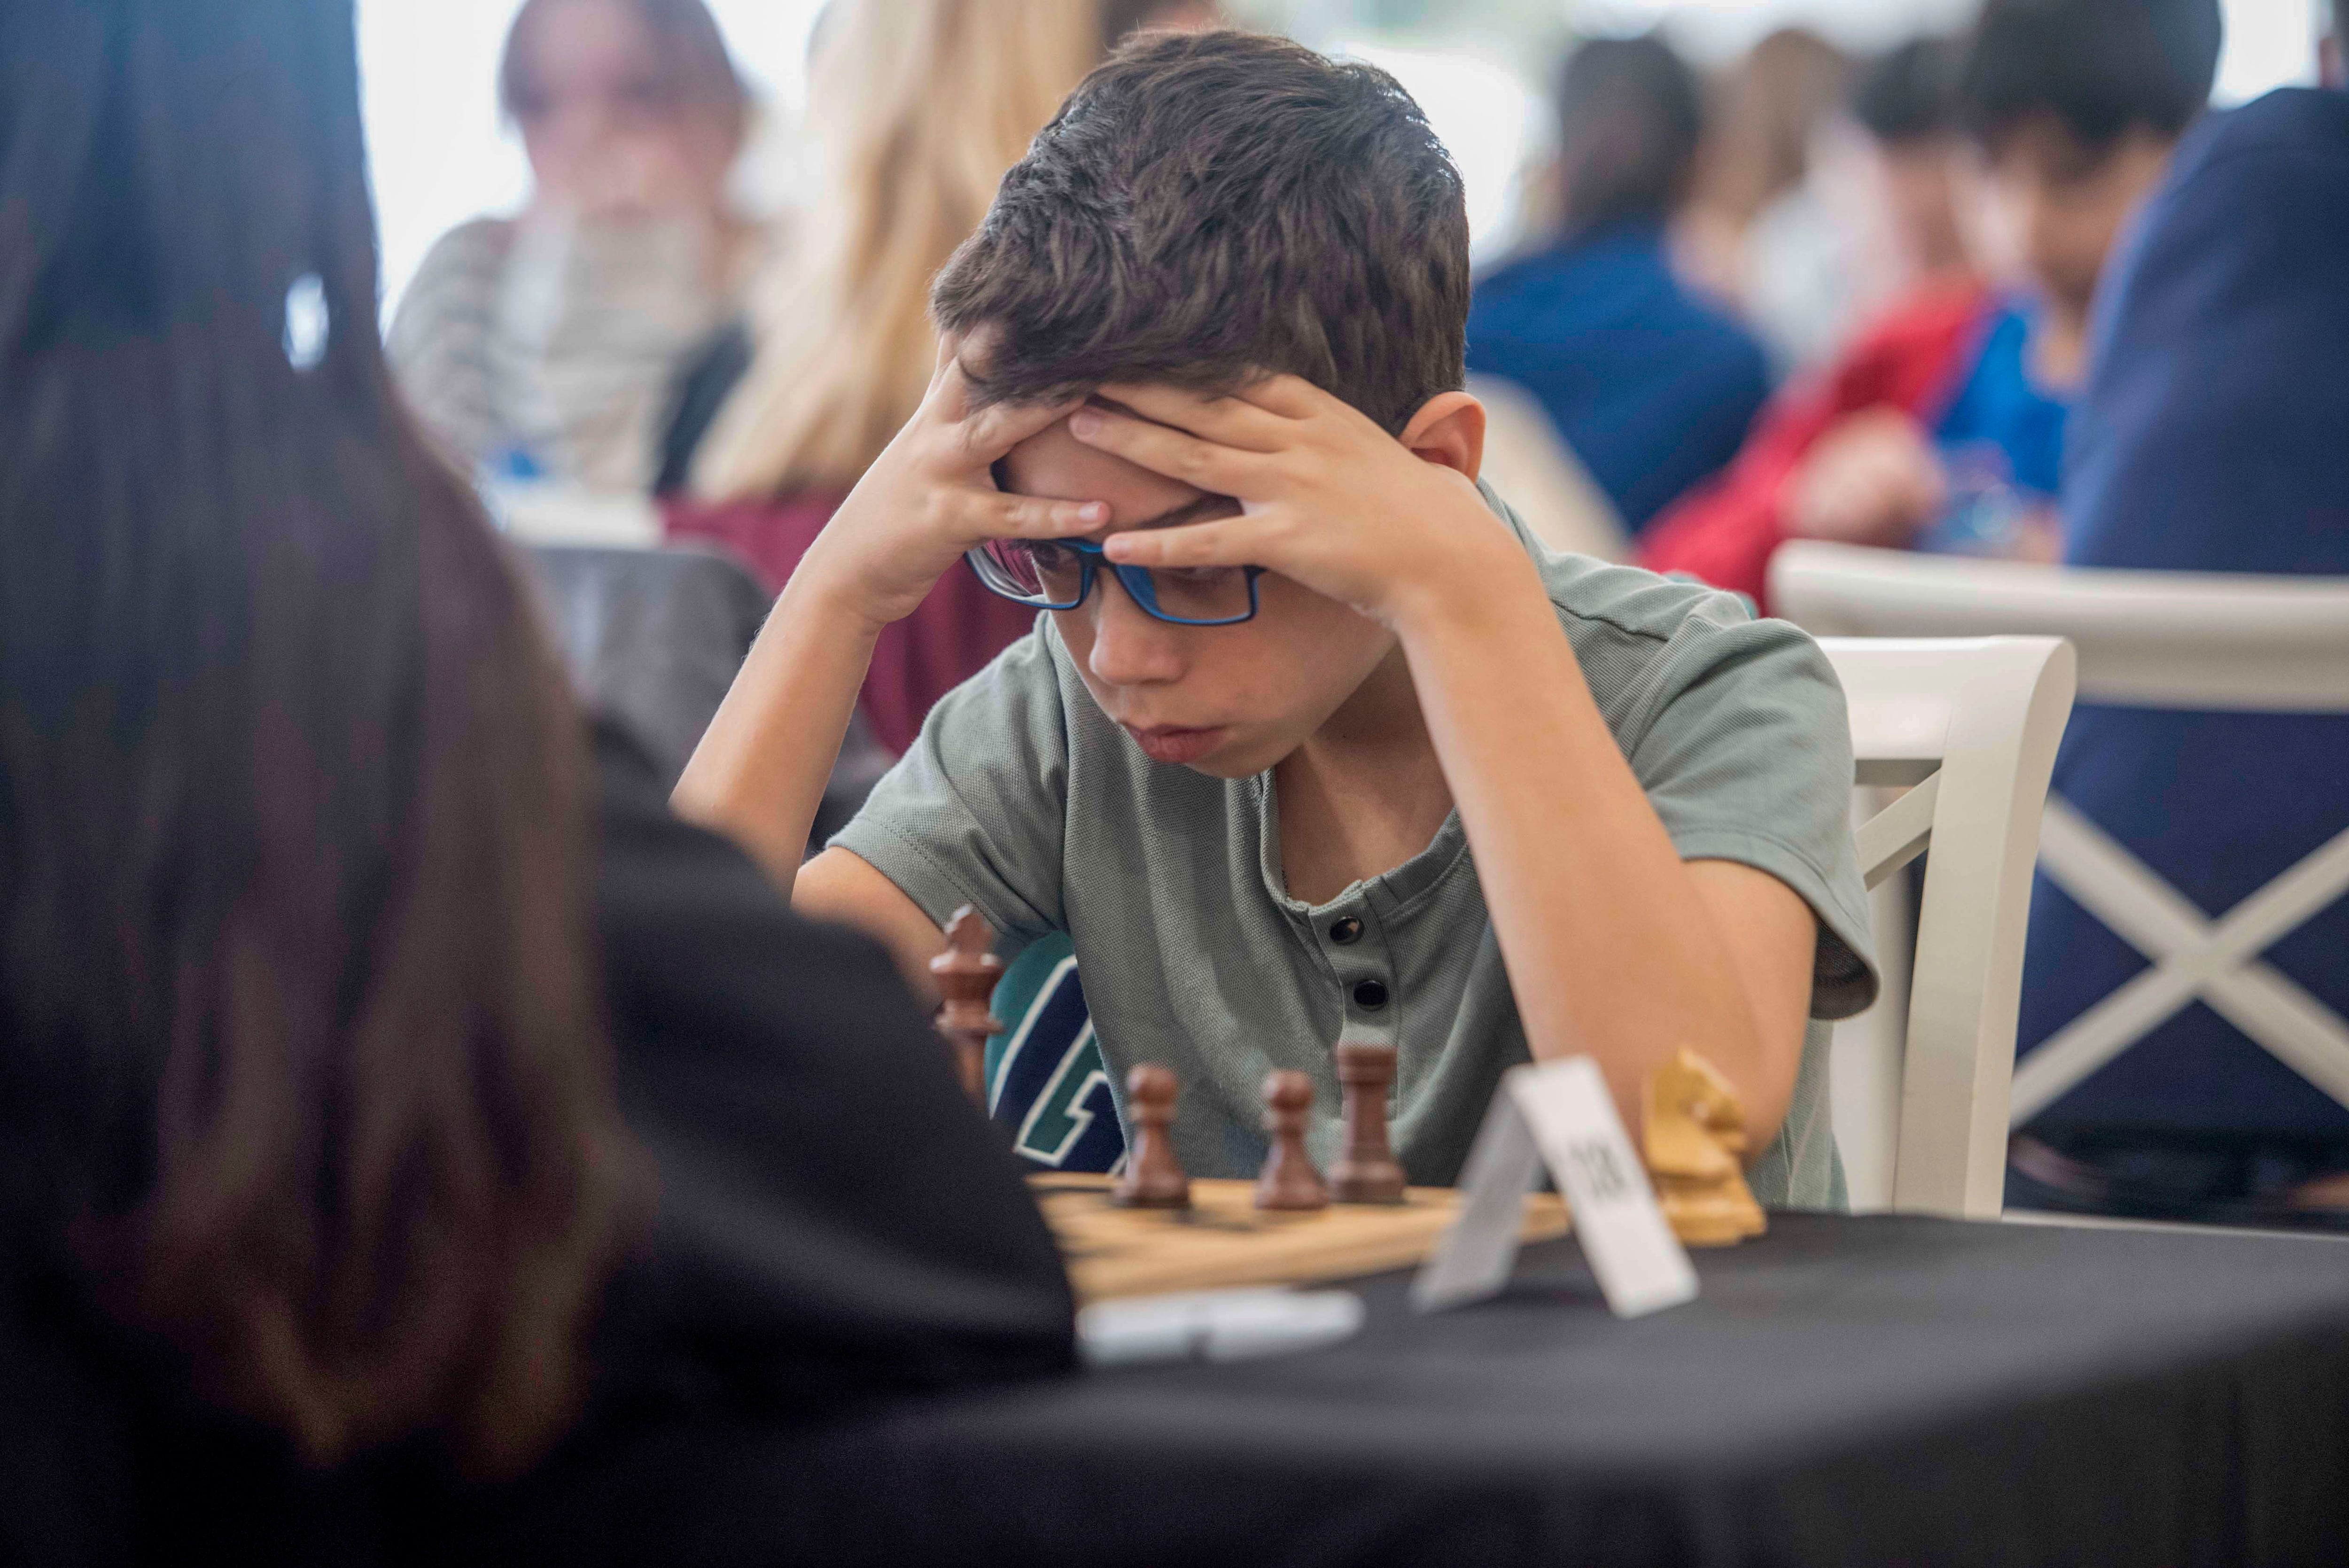 El jugador argentino Faustino Oro participa en la primera ronda del III Open Chess Menorca disputado en Ciutadella (Menorca). EFE/ David Arquimbau Sintes 